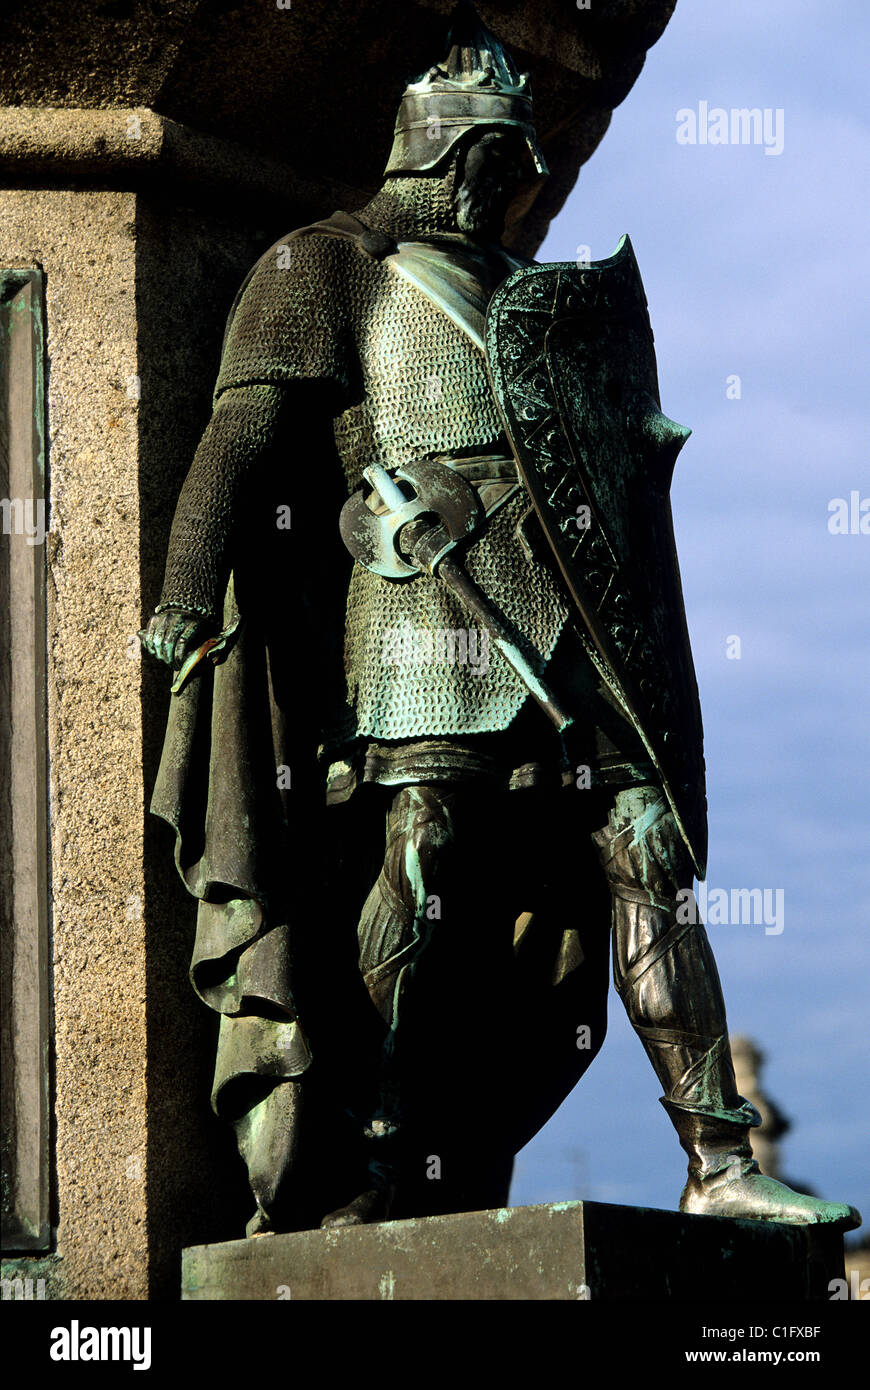 France, Calvados, Falaise, des statues des ducs de Normandie sur la base de la statue équestre de Guillaume le Conquérant Banque D'Images